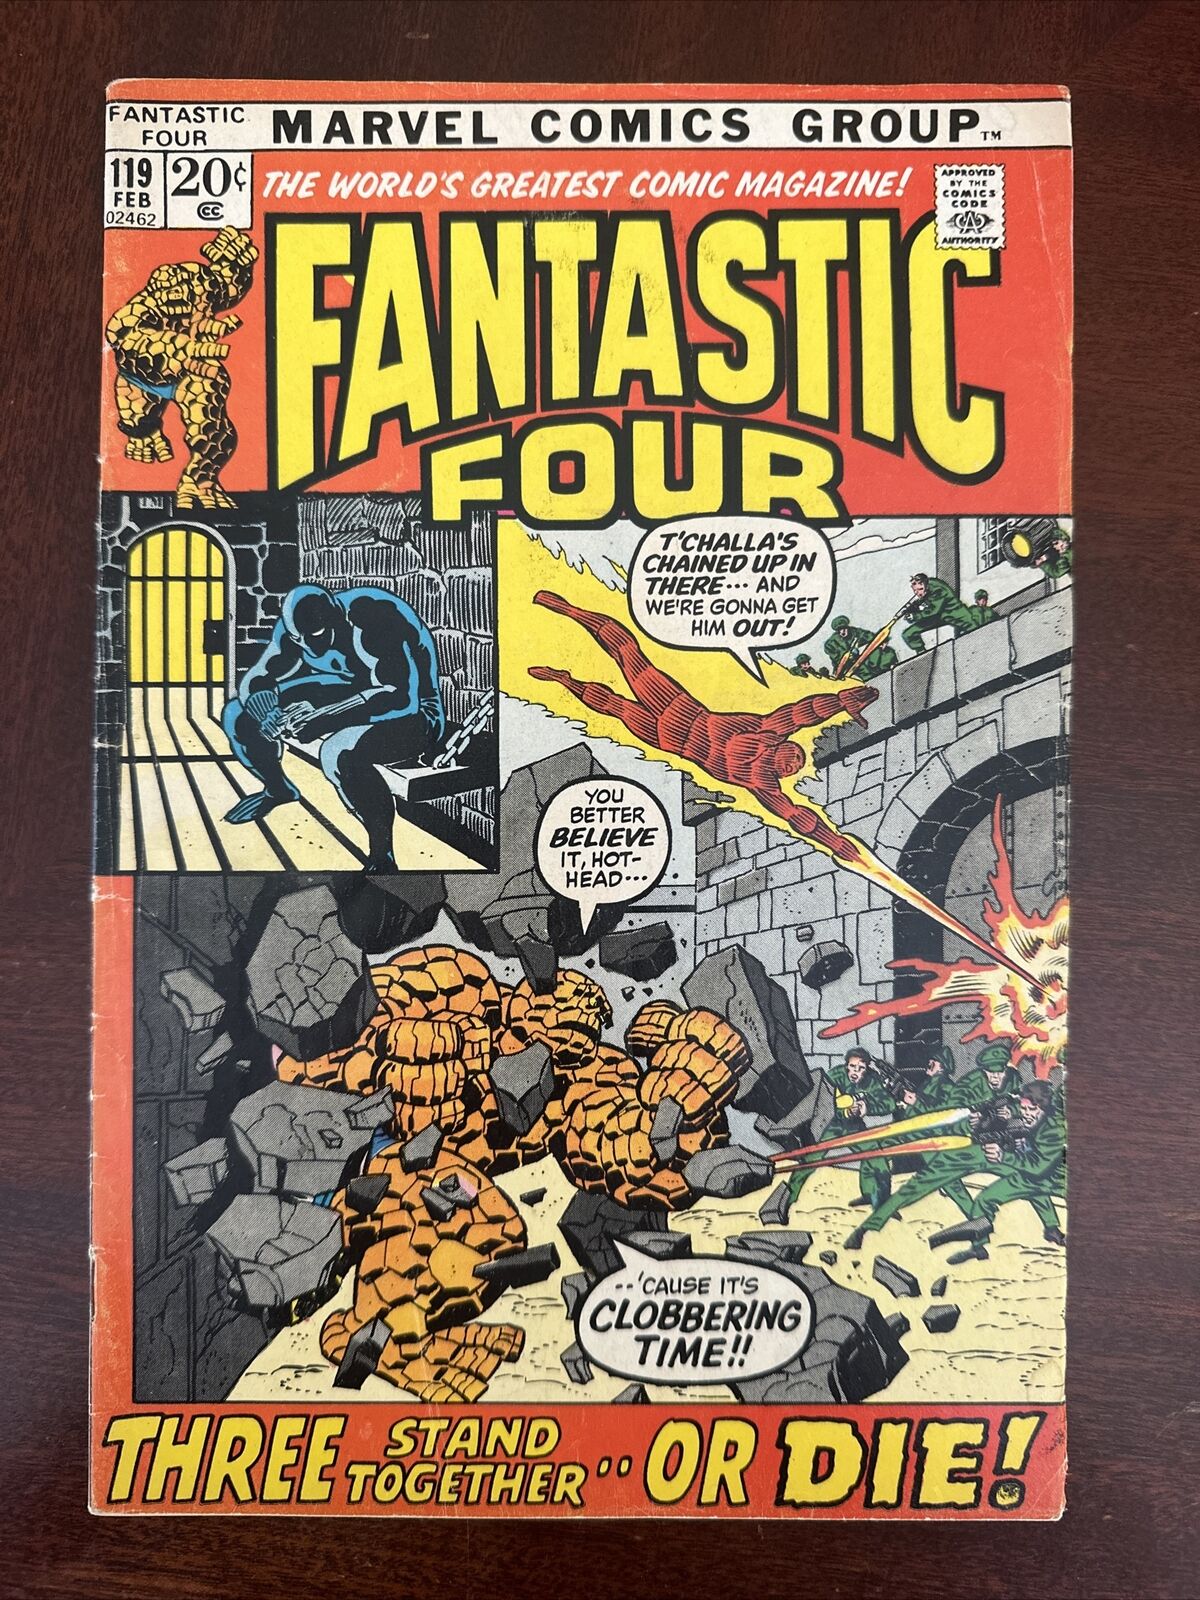 (1972) Fantastic Four #119 - old Marvel comic